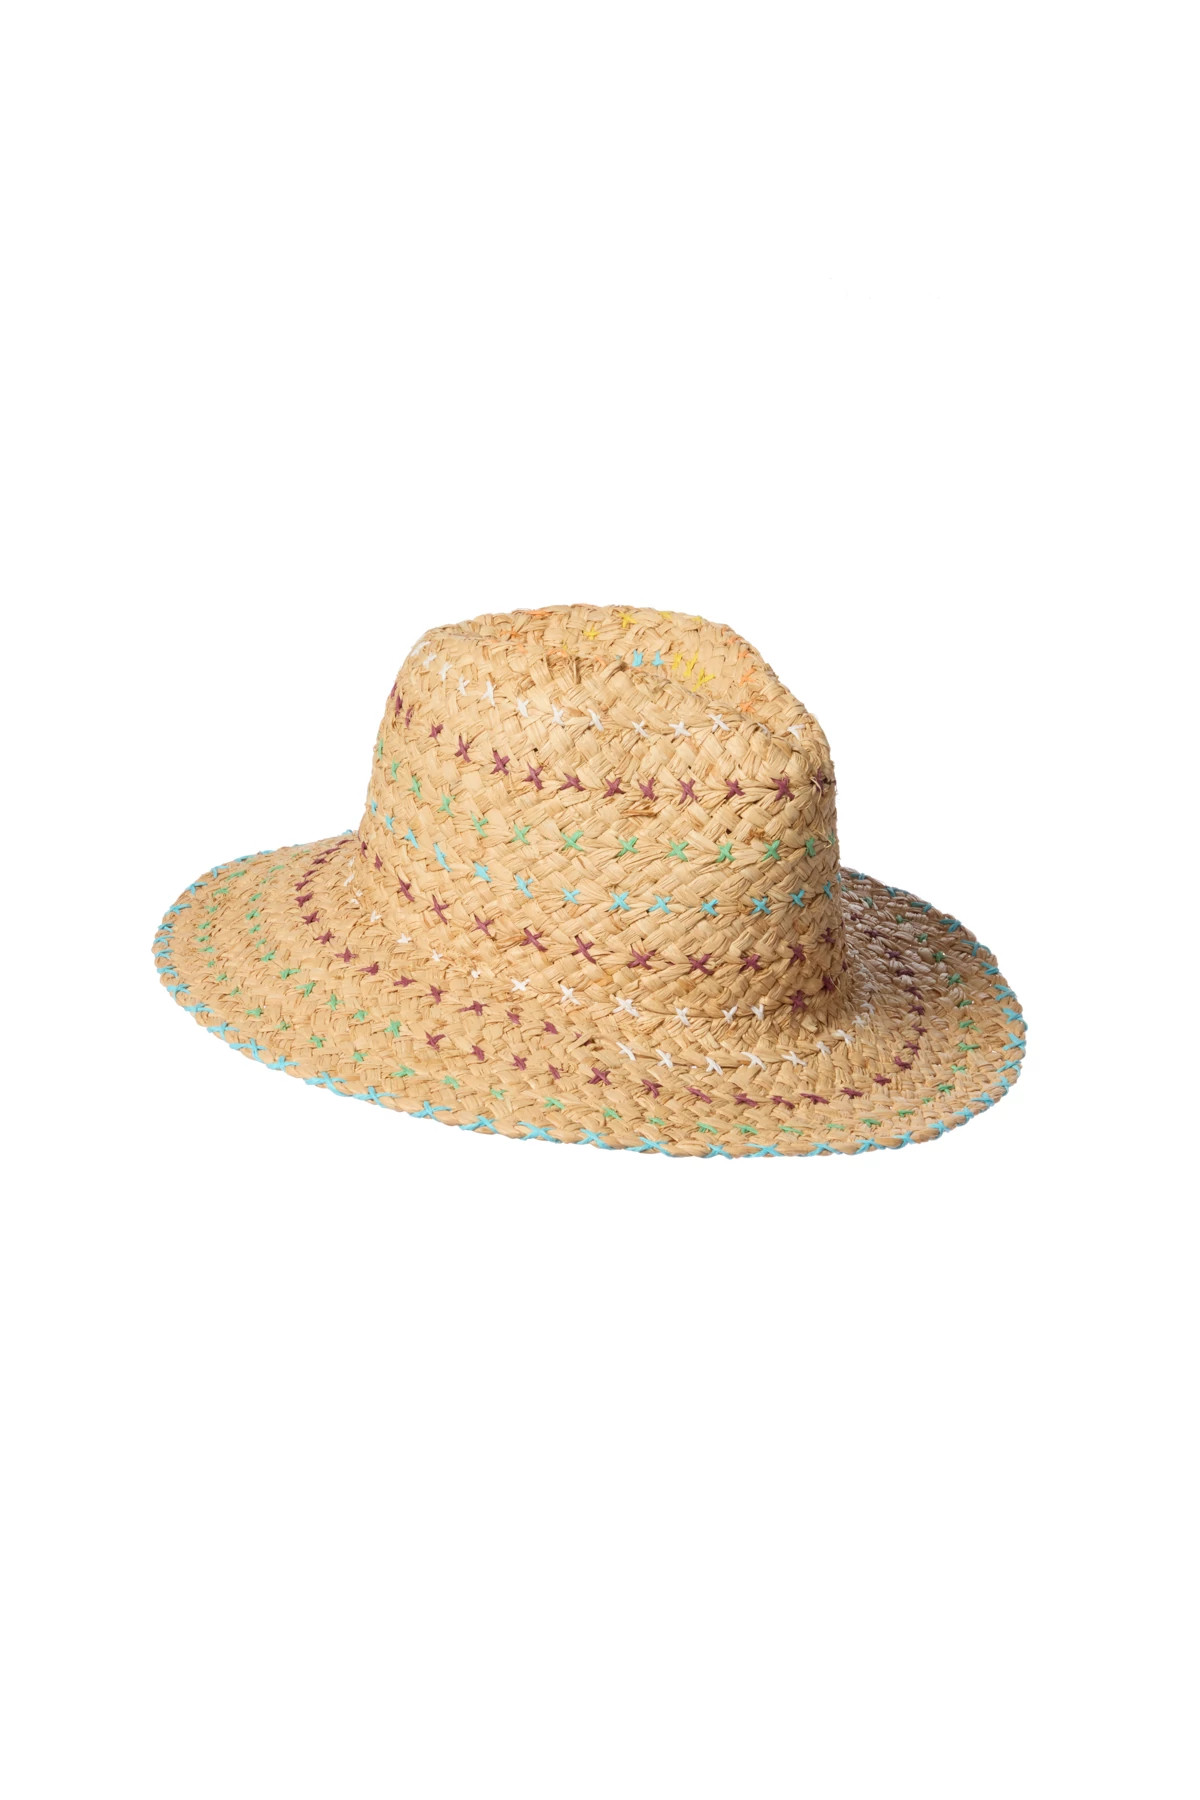 AQUA MULTI Saccara Panama Hat image number 1